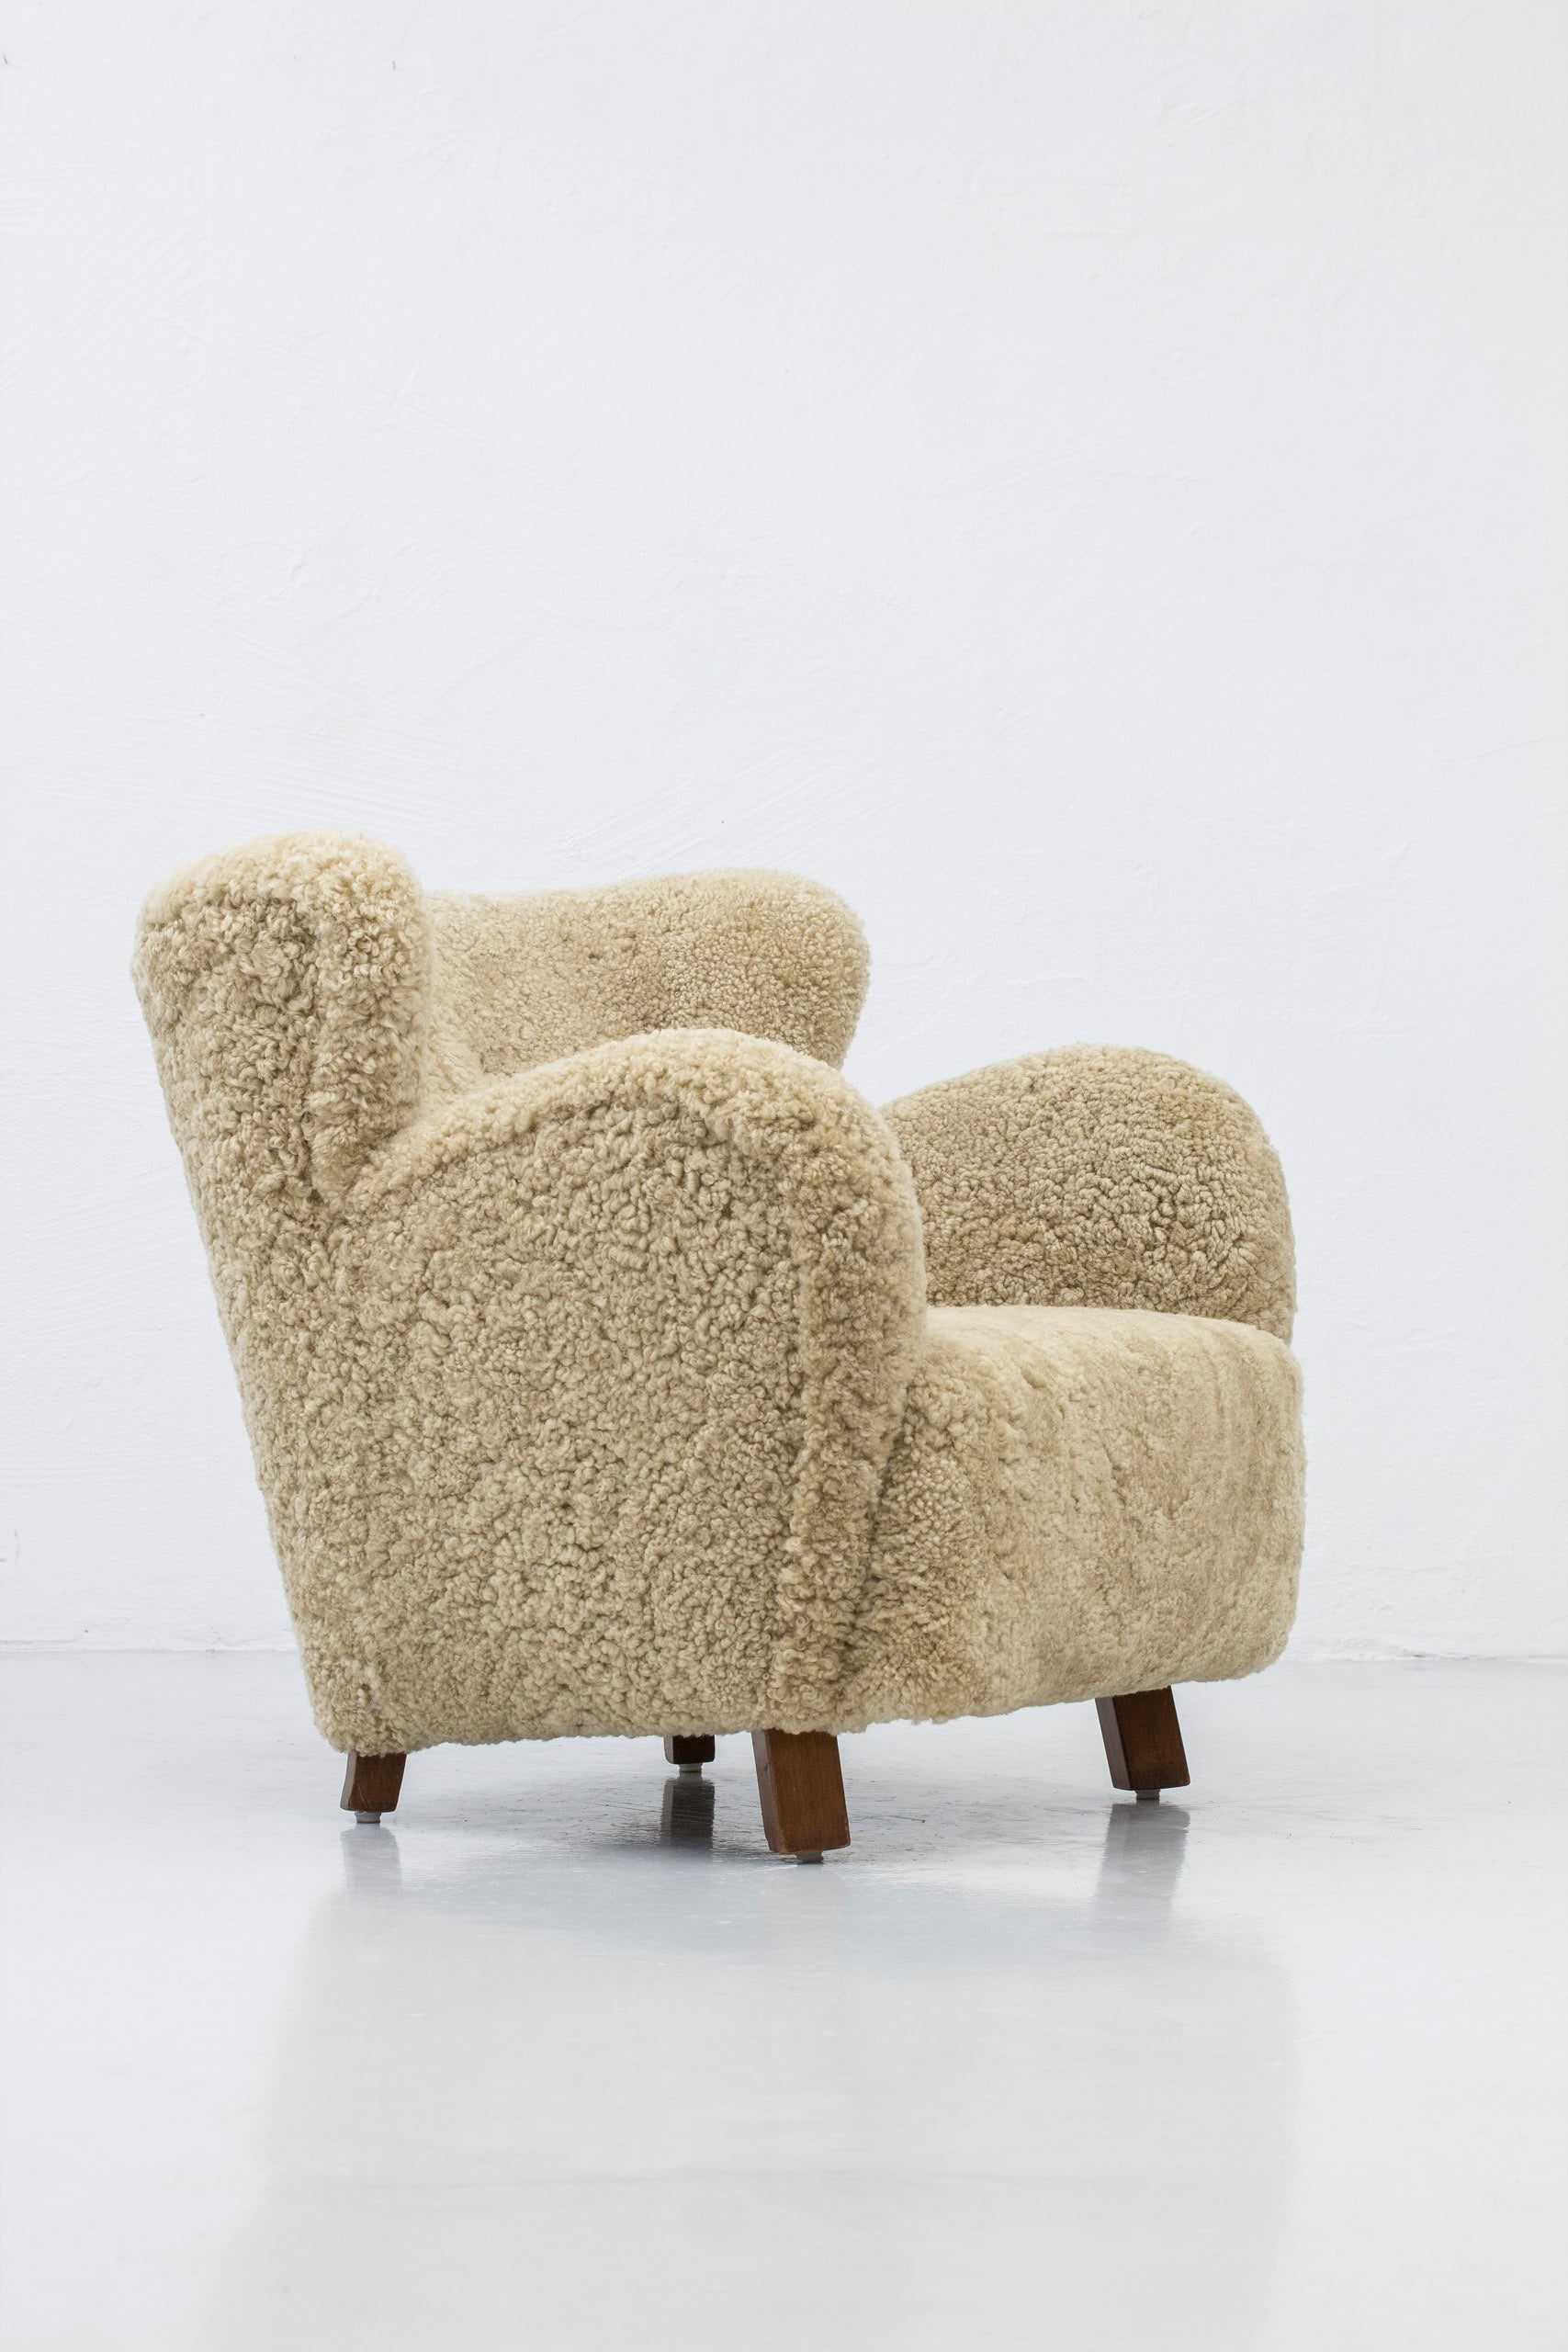 Danish modern sheep skin chair